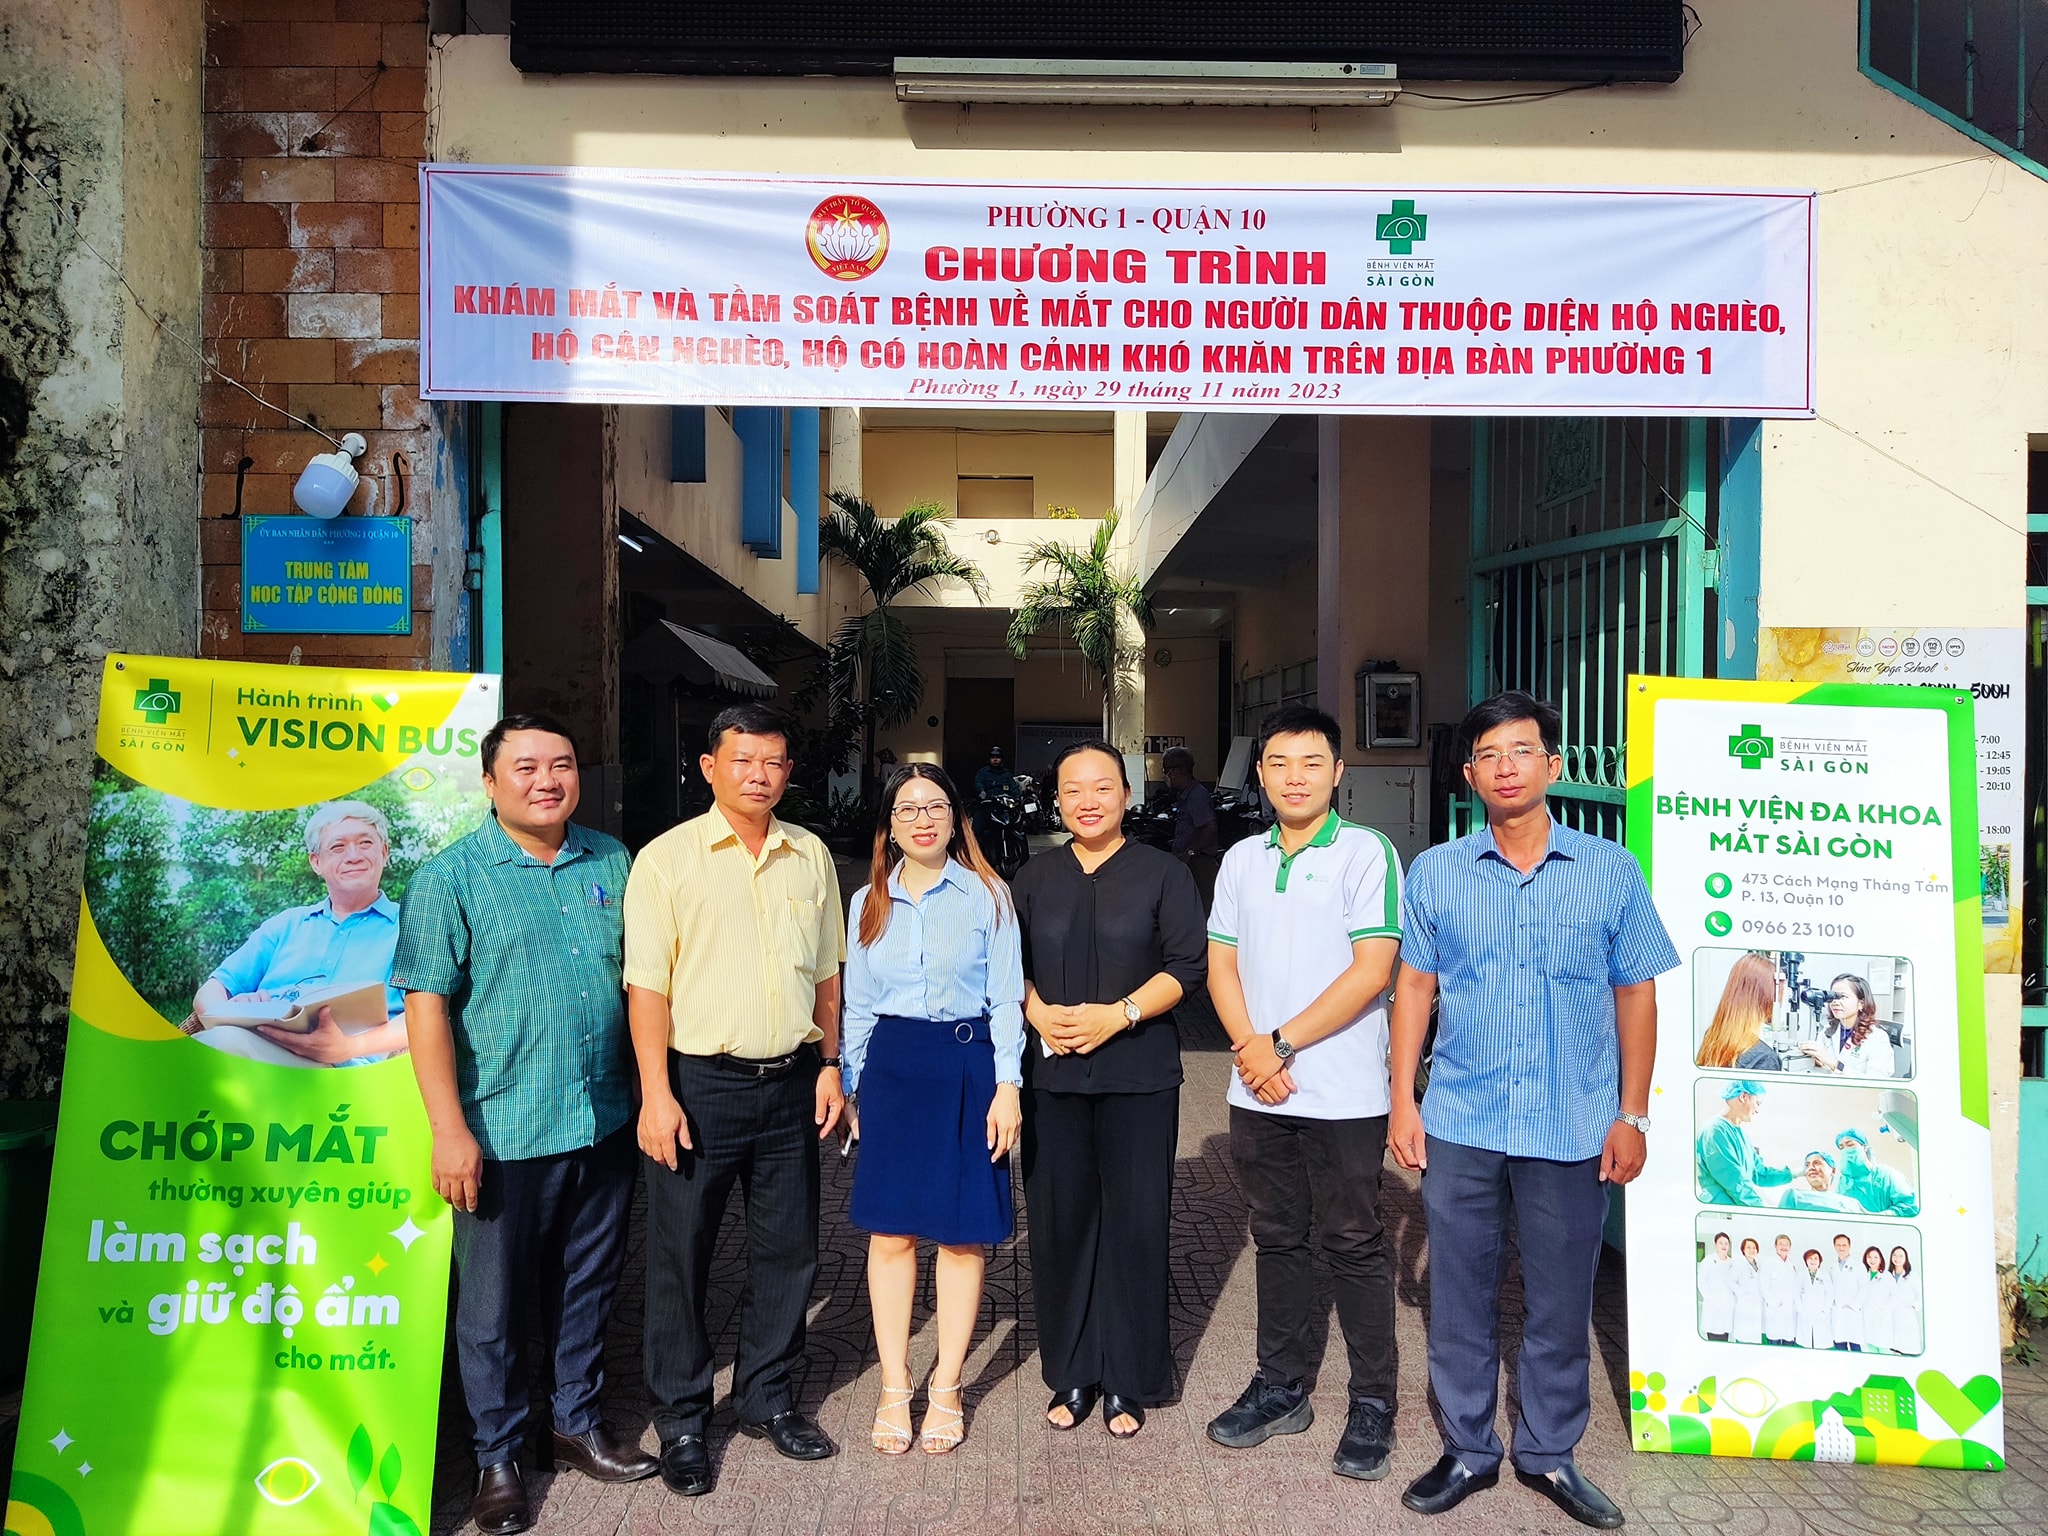 Image: Ủy ban Mặt trận Tổ quốc Việt Nam Phường 1 phối hợp tổ chức chăm lo sức khoẻ cho hộ nghèo, hộ cận nghèo, hộ có hoàn cảnh khó khăn trên địa bàn Phường 1